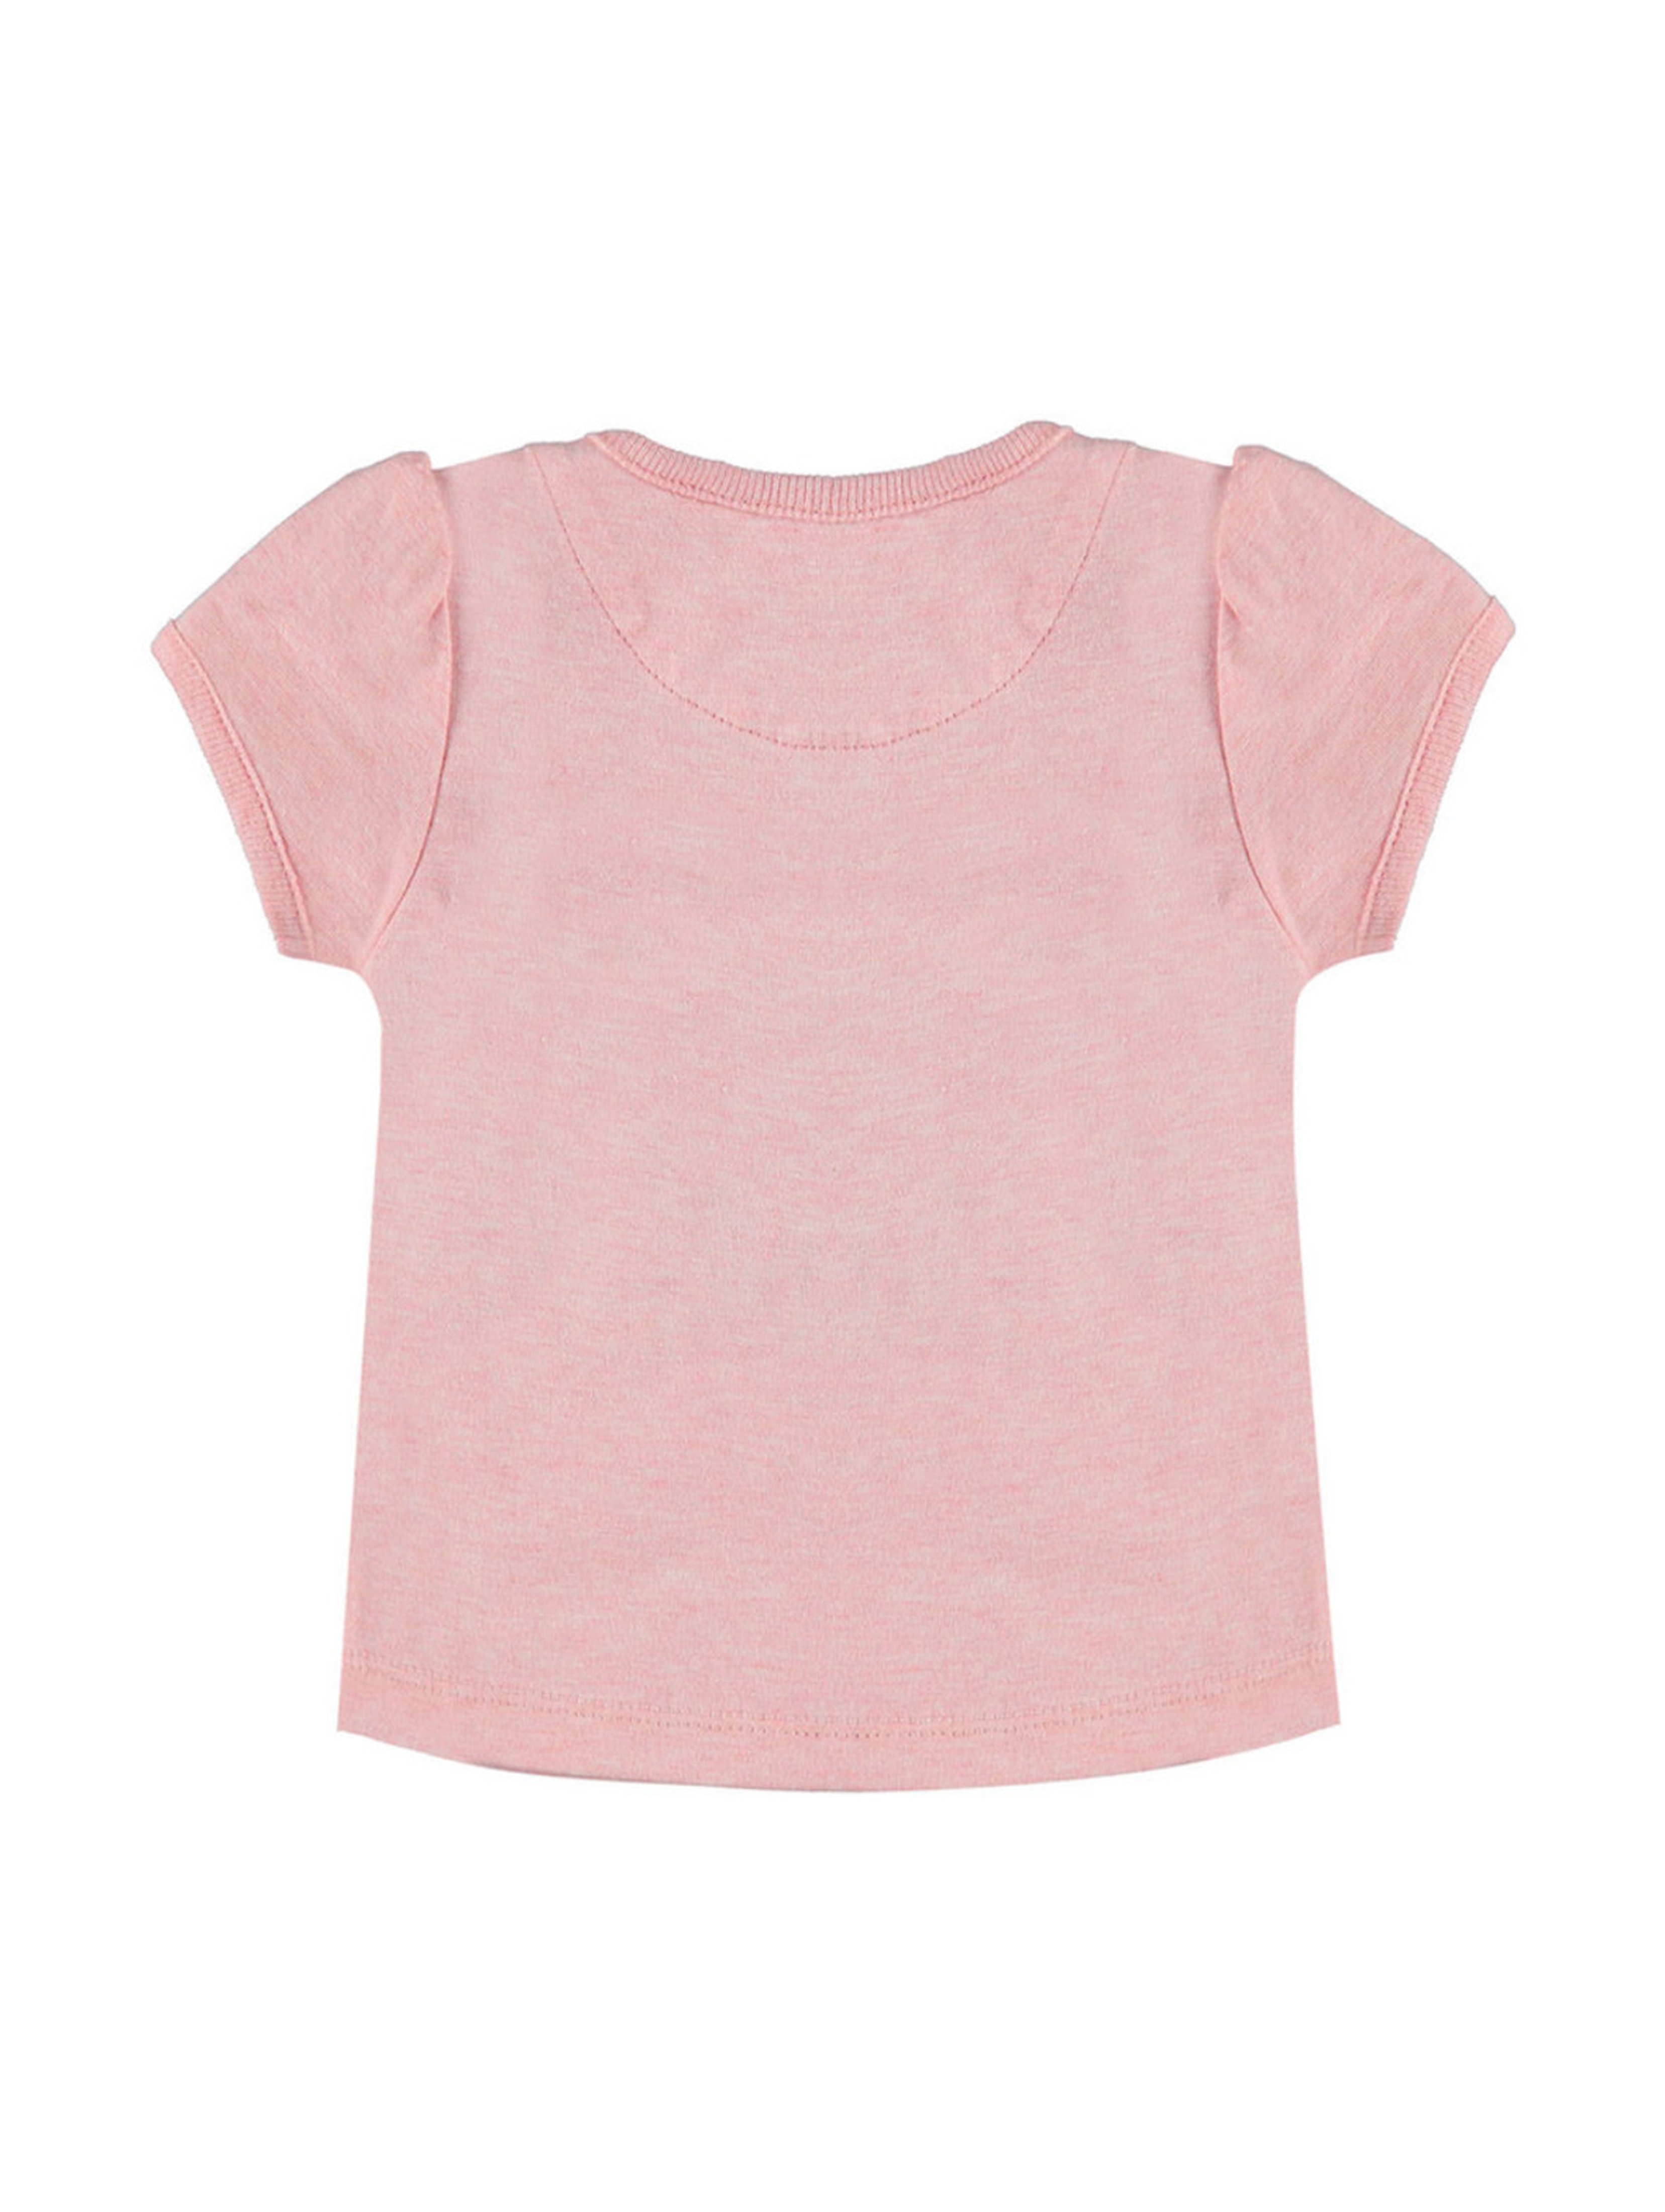 T-shirt dziewczęcy różowy napisy różowy